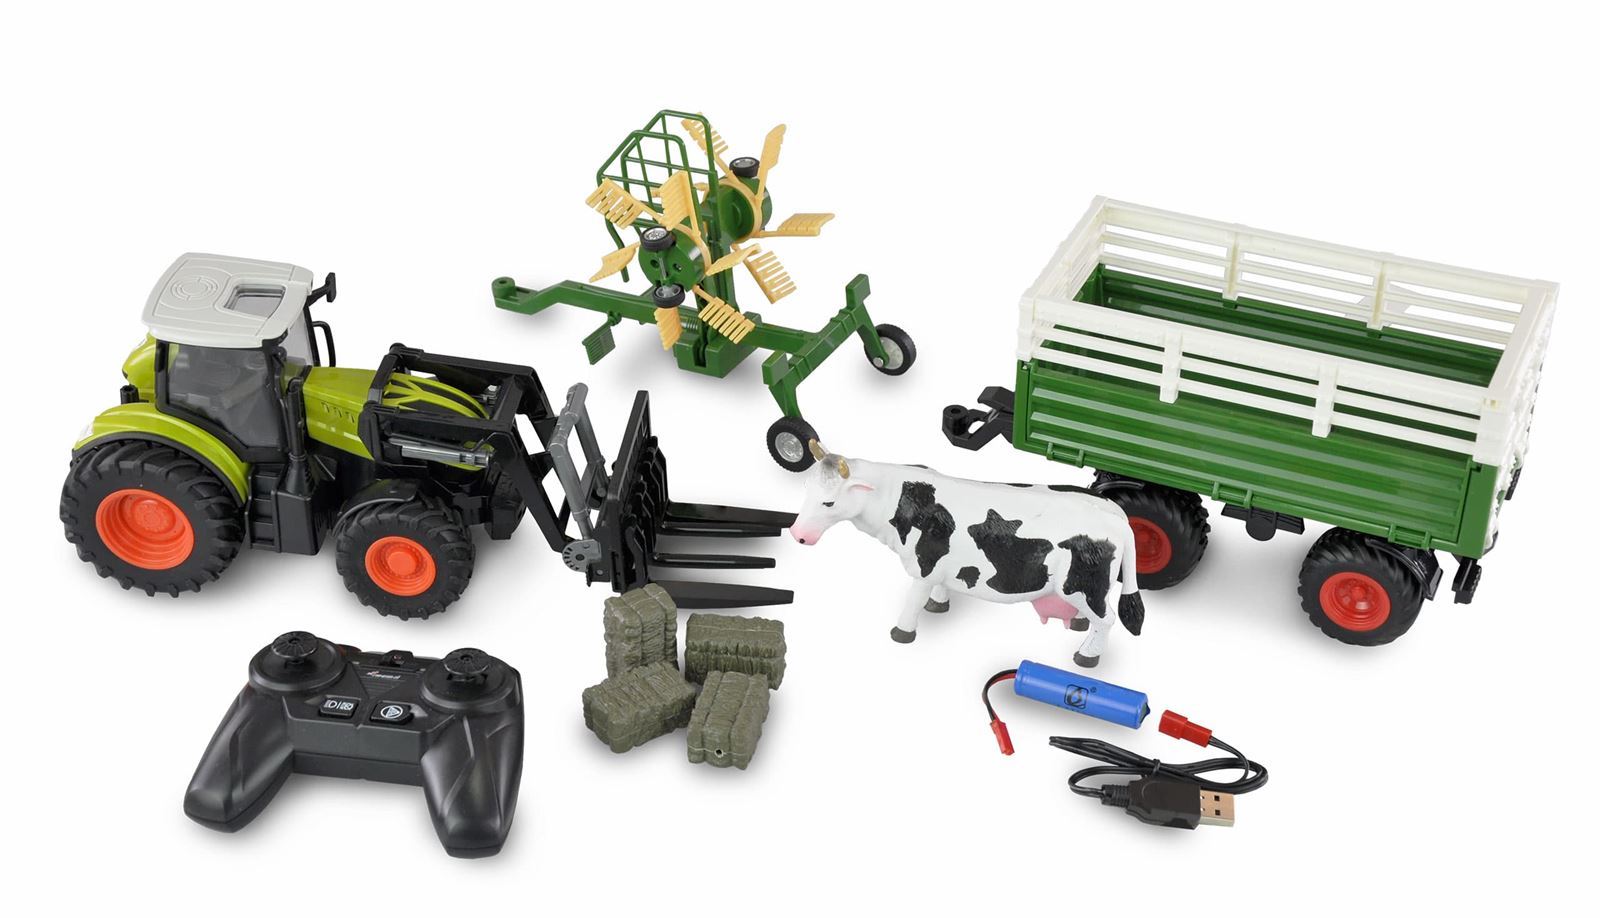 Tractor radiocontrol con remolque, rastrillo, horquilla, vaca y fardos de heno 1:24 RTR verde - Imagen 2